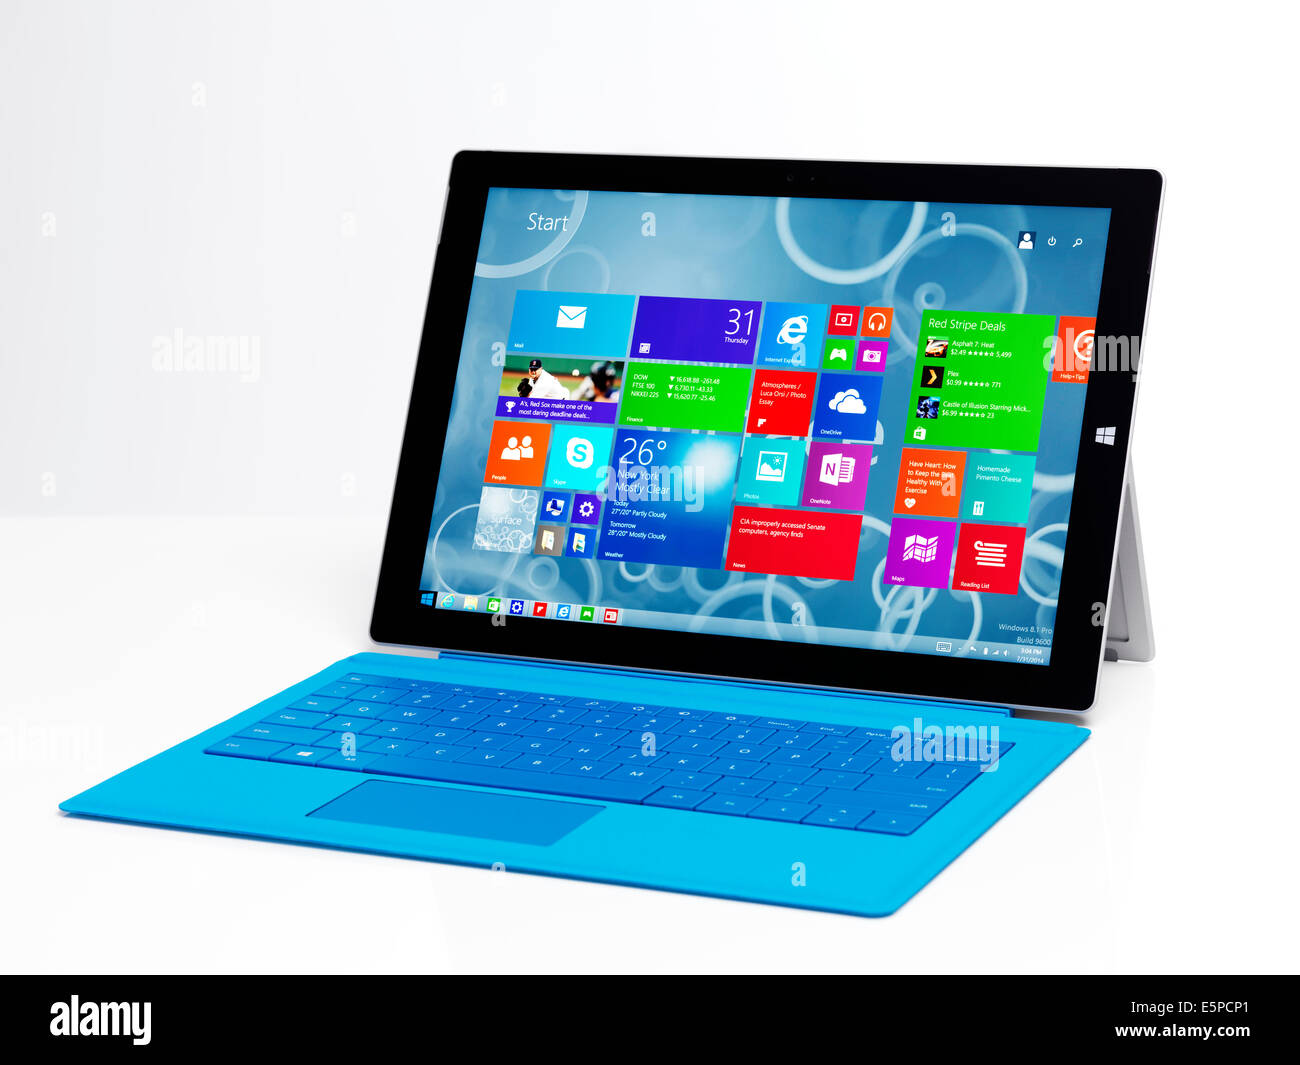 Microsoft Surface Pro 3 tablet là một trong những máy tính bảng tốt nhất hiện nay với màn hình cực kỳ sắc nét, thiết kế đẹp mắt và khả năng xử lý mạnh mẽ. Với Surface Pro 3, bạn sẽ cảm thấy hài lòng về tất cả các khía cạnh của thiết bị này.